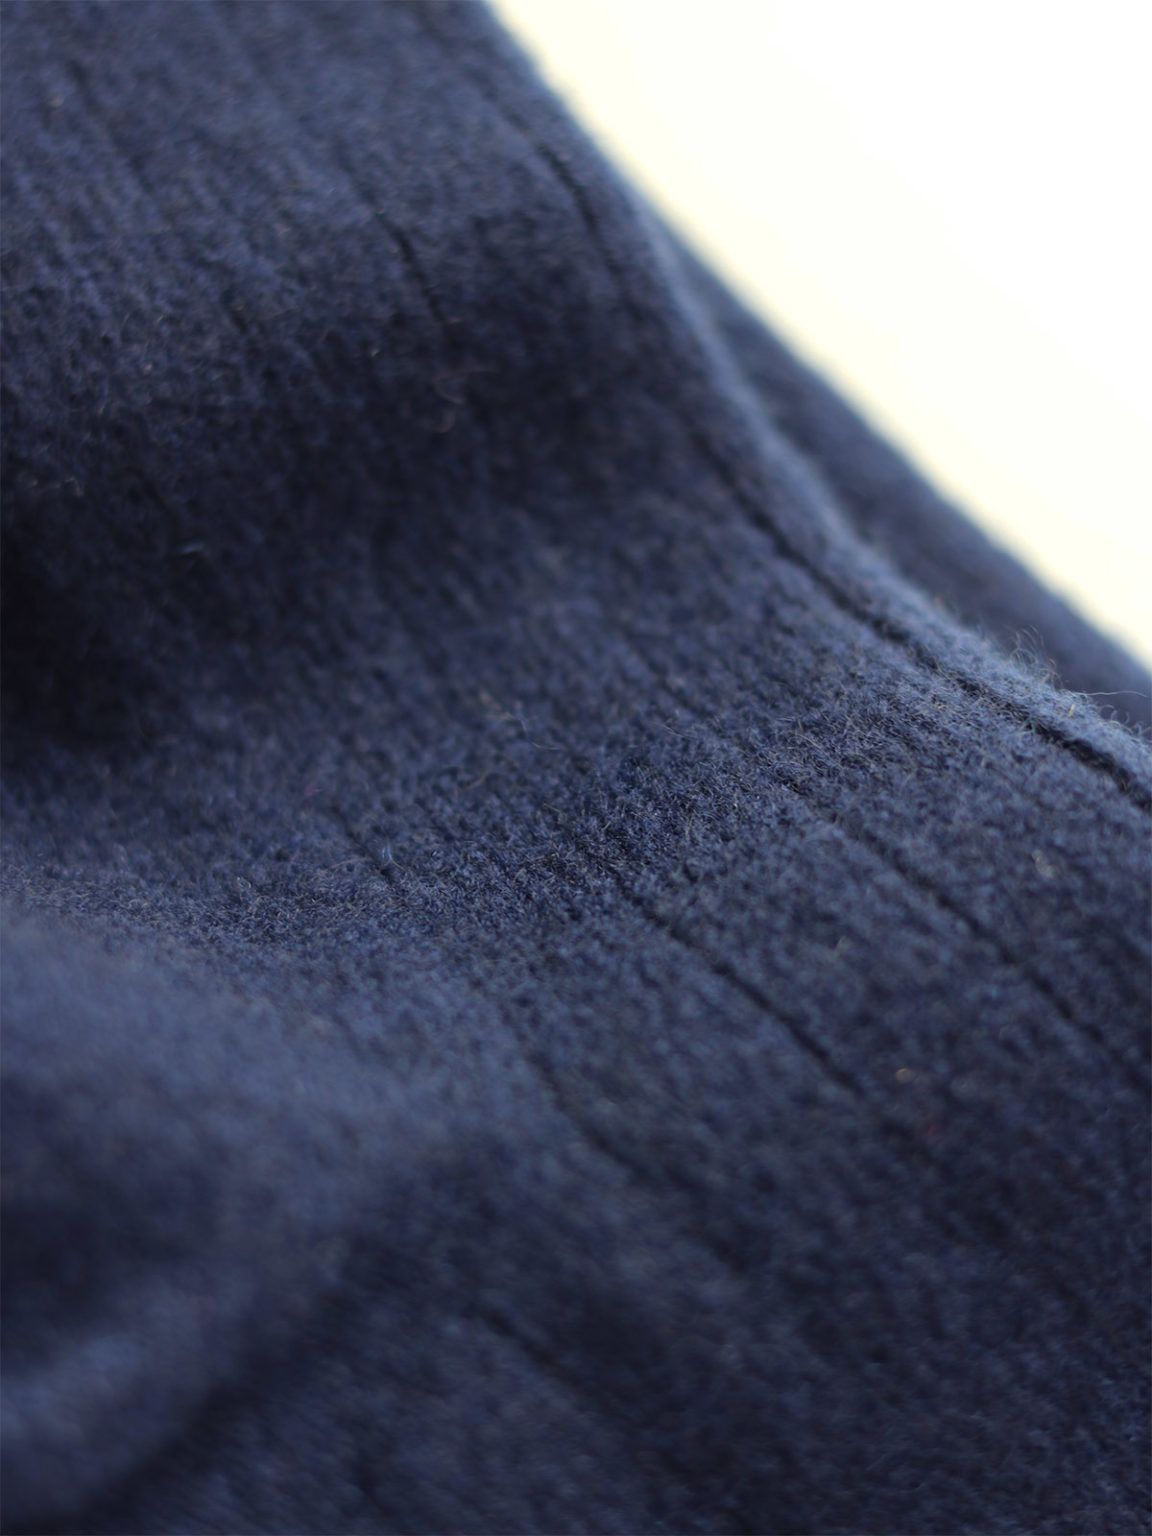 Unisex cashmere sokker, mørkeblå, Gobi, Fair Fashionista